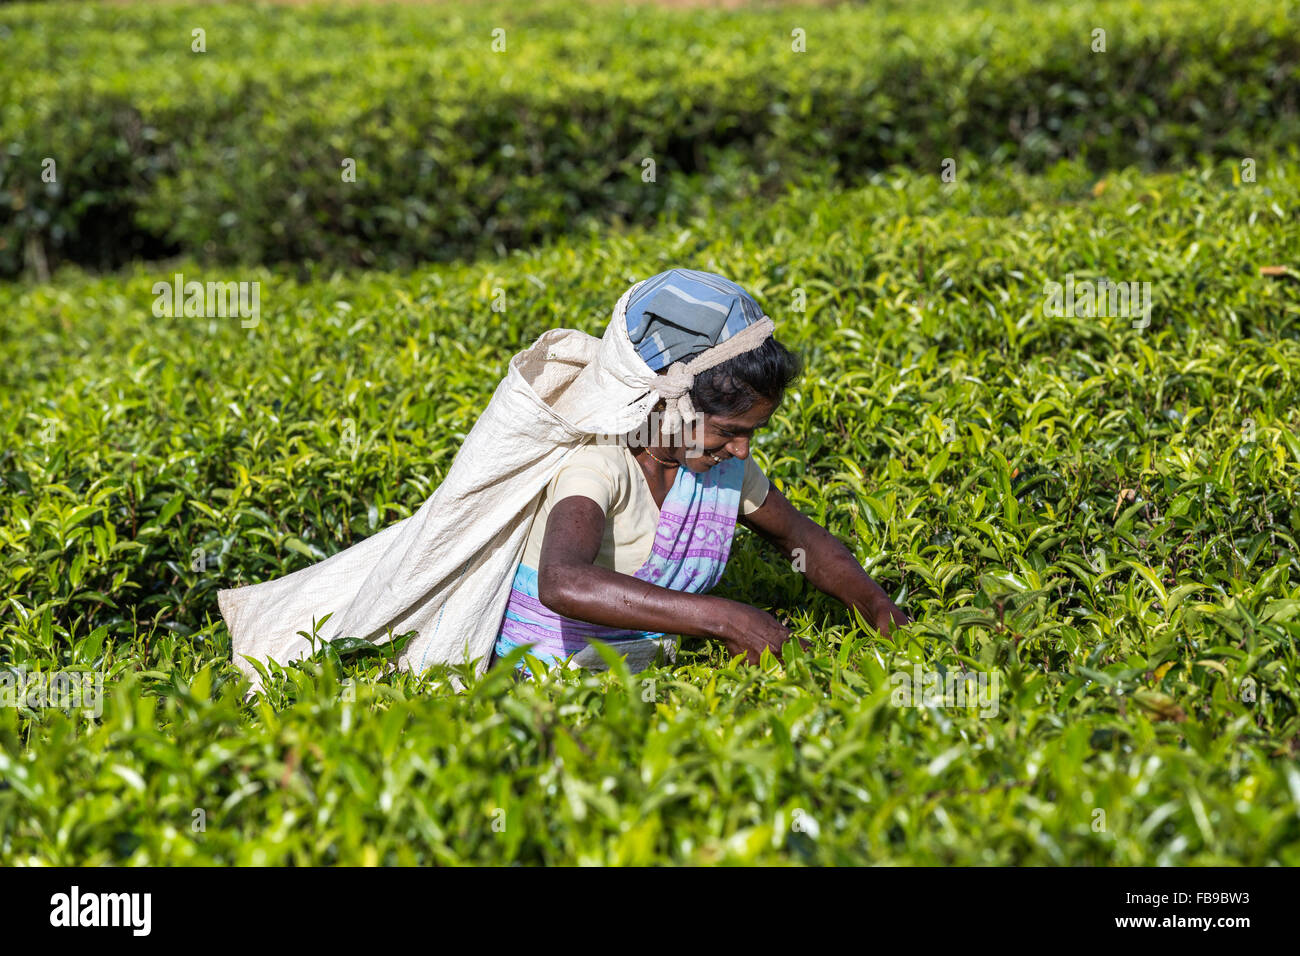 La cueillette du thé, plantation de thé, province, district Hatton, Adam's peak quartier Sri Lanka, Asia Banque D'Images